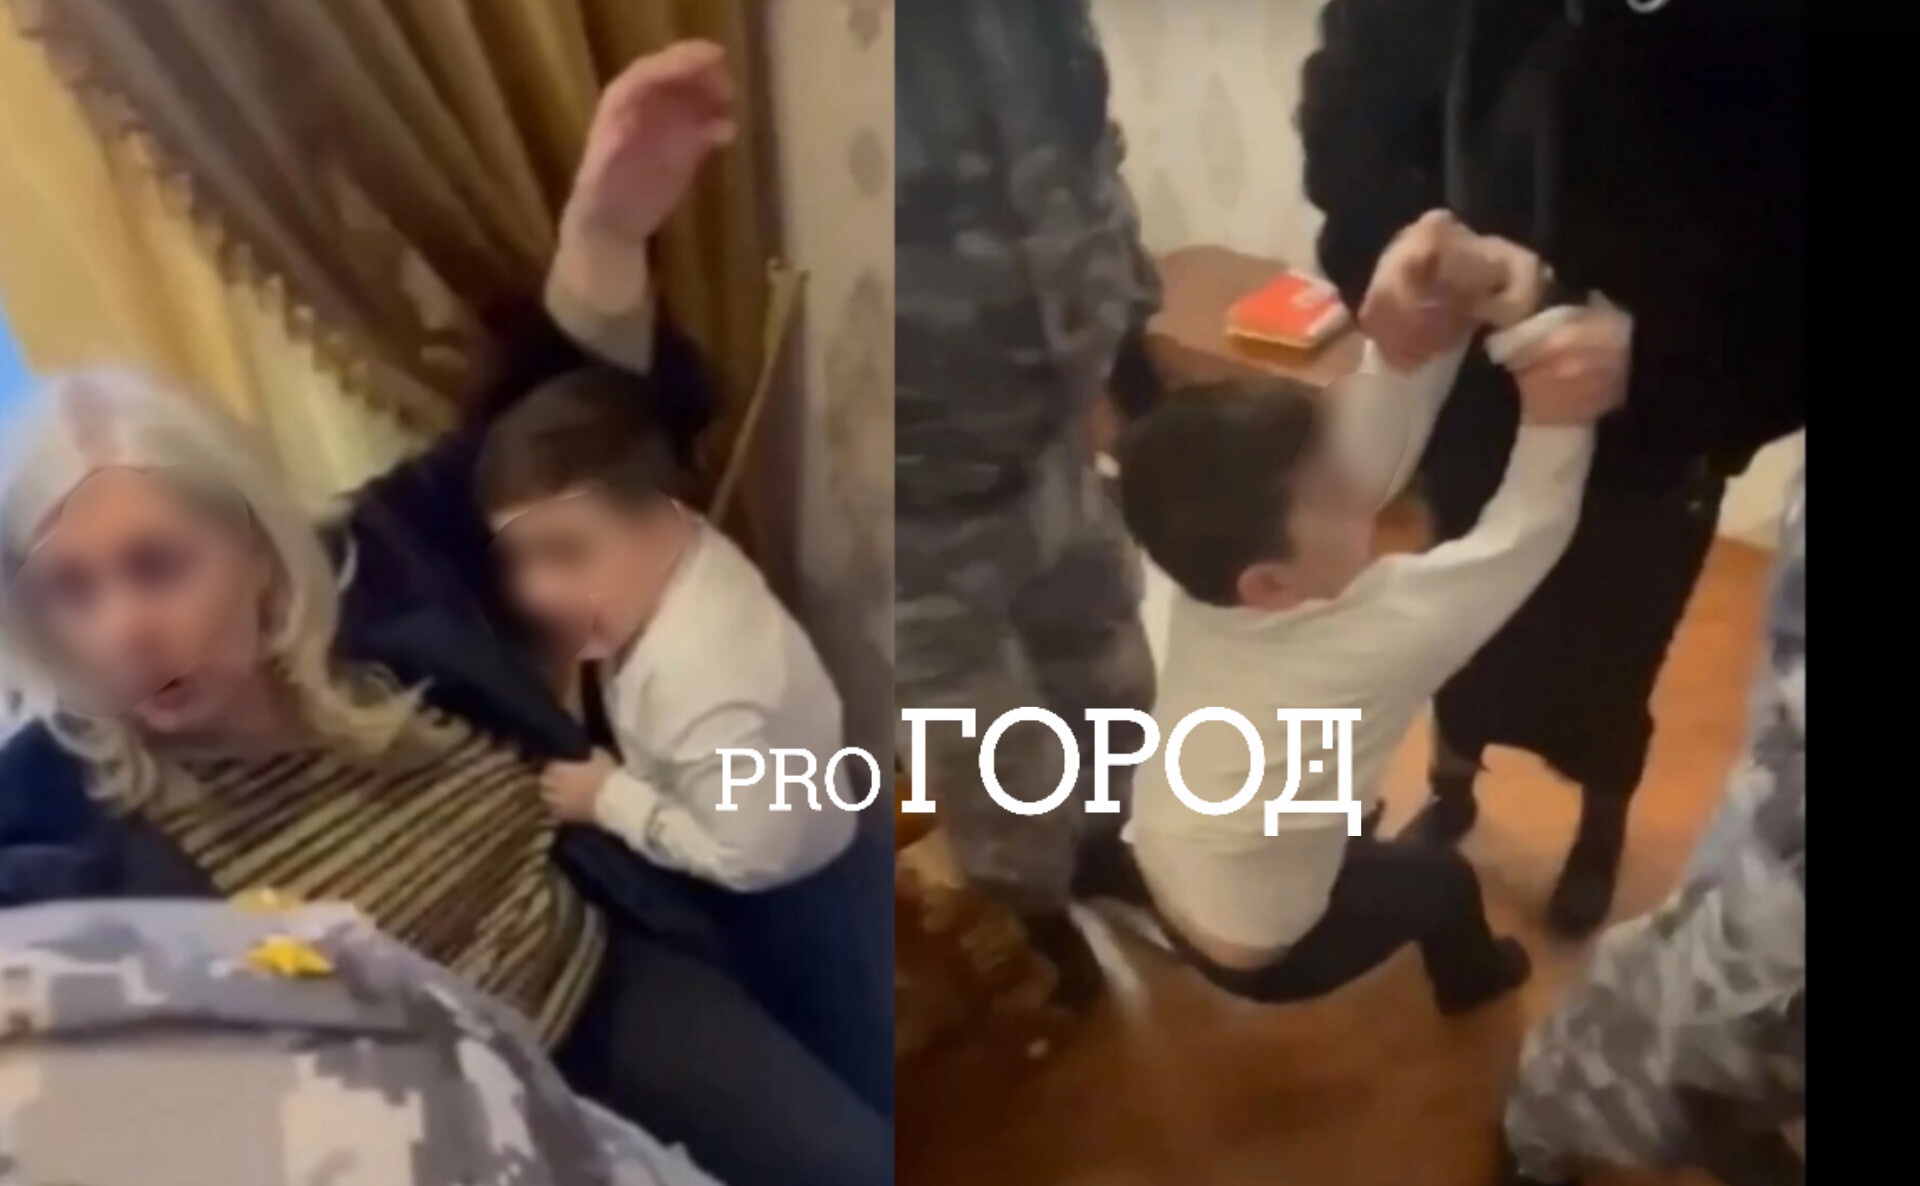  "Папа! Папа!!!": в Ярославле приставы в масках жестоко забрали мальчика у отца